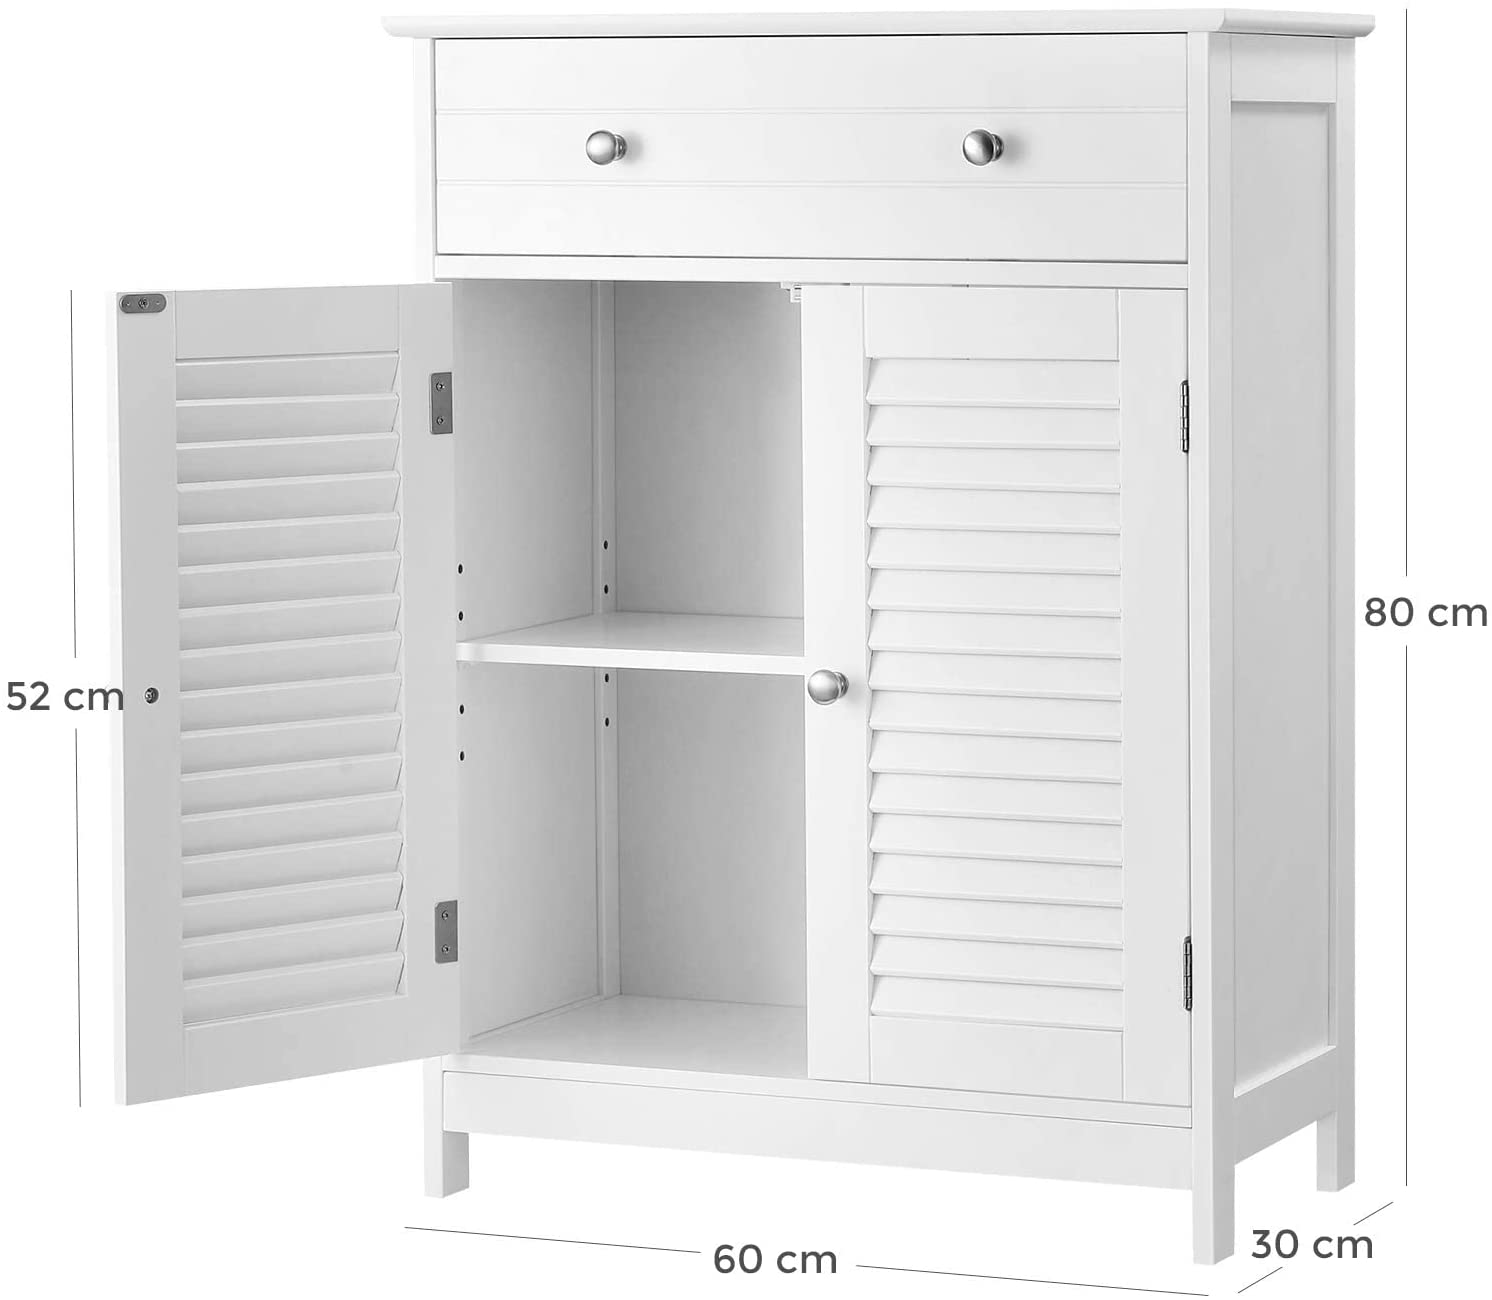 BBC51WT Bathroom Cabinet 60 x 30 x 80 cm RAW58.dk